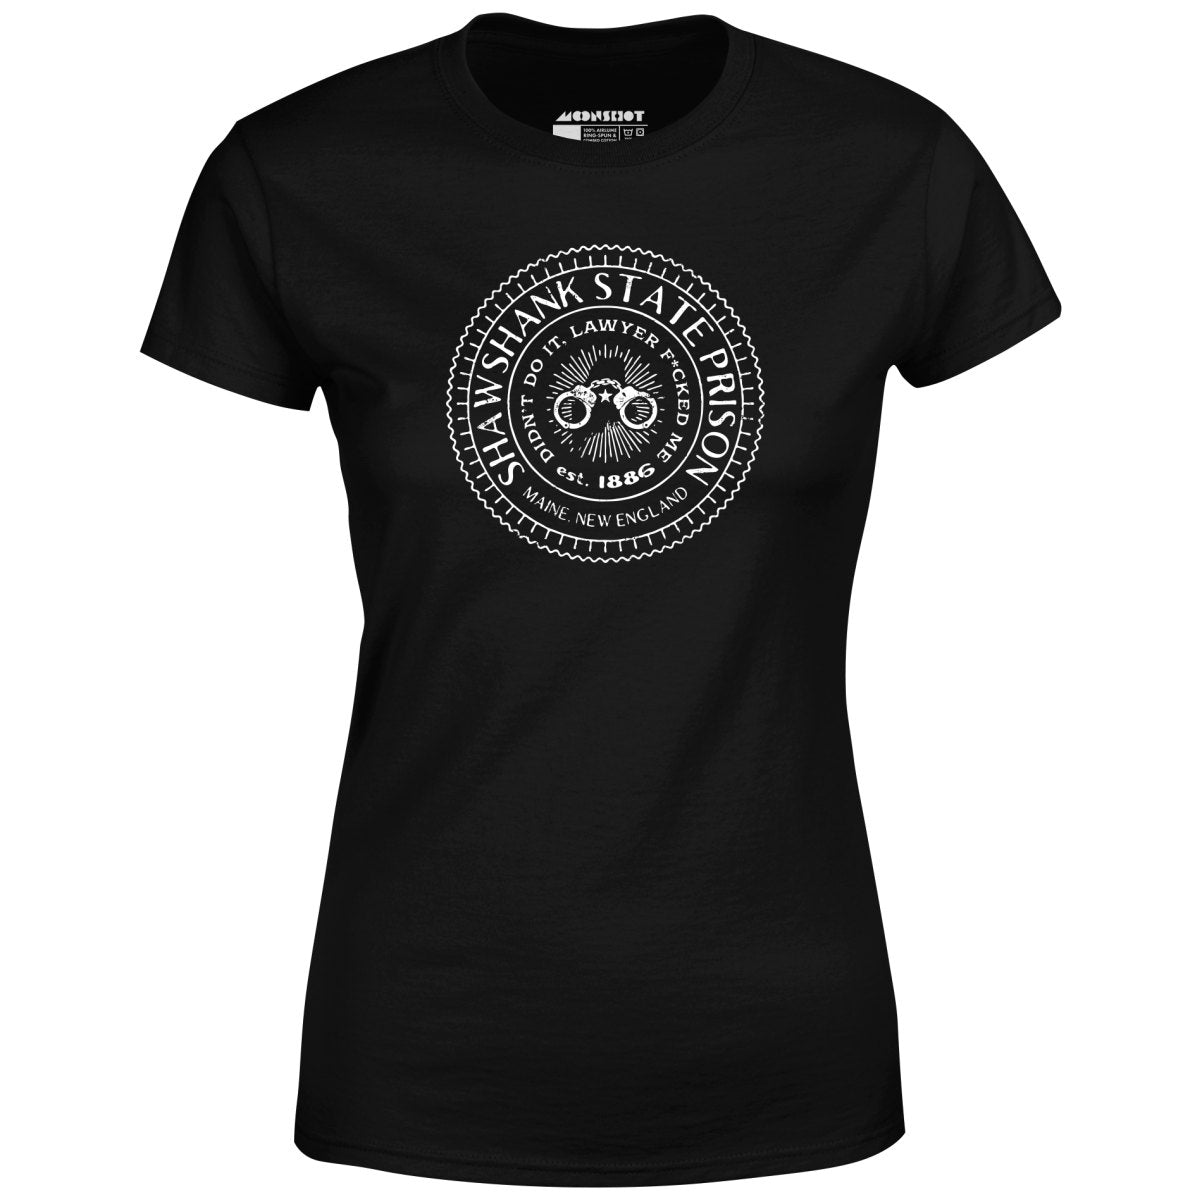 Shawshank State Prison - Women's T-Shirt